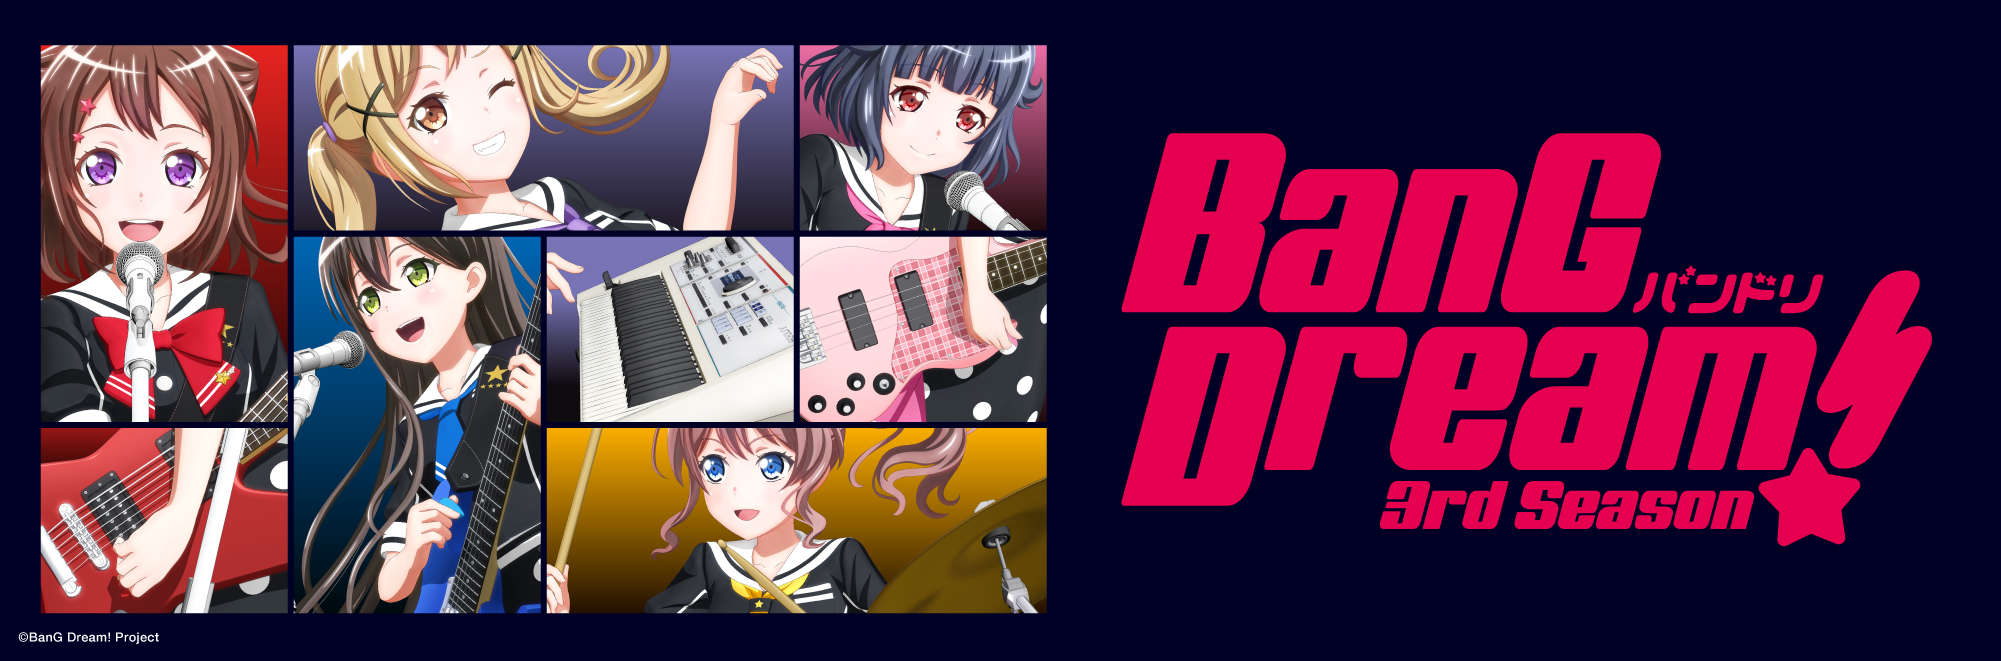 BanG Dream!3rd Season - BanG Dream! Wiki